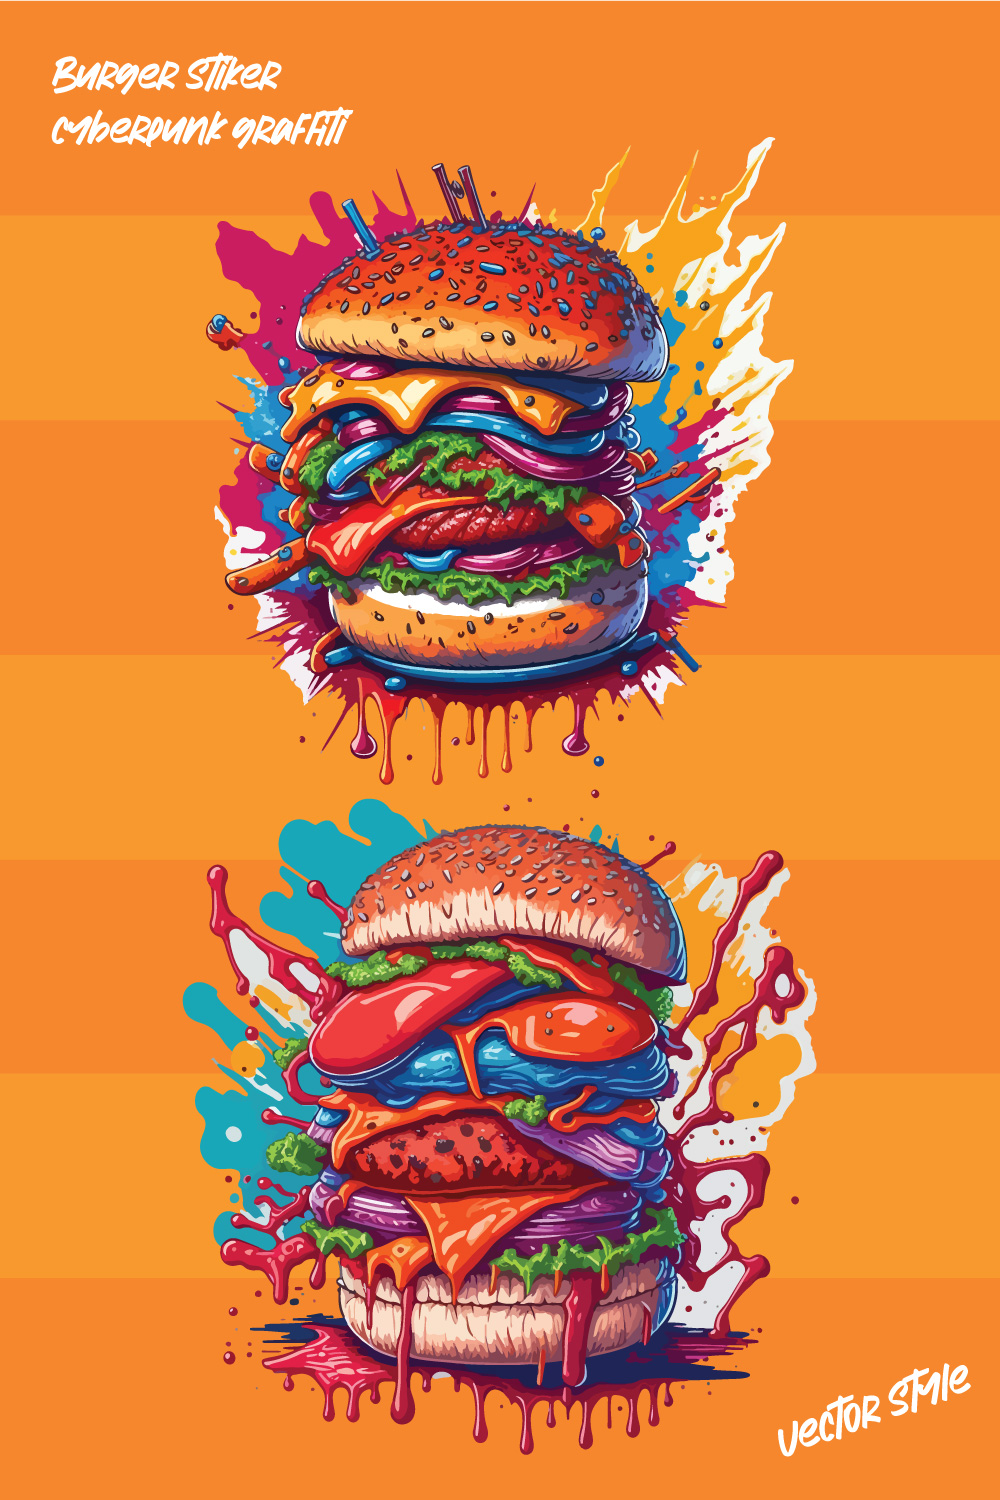 Burger Sticker cyberpunk graffiti Illustration T shirt Design pinterest preview image.